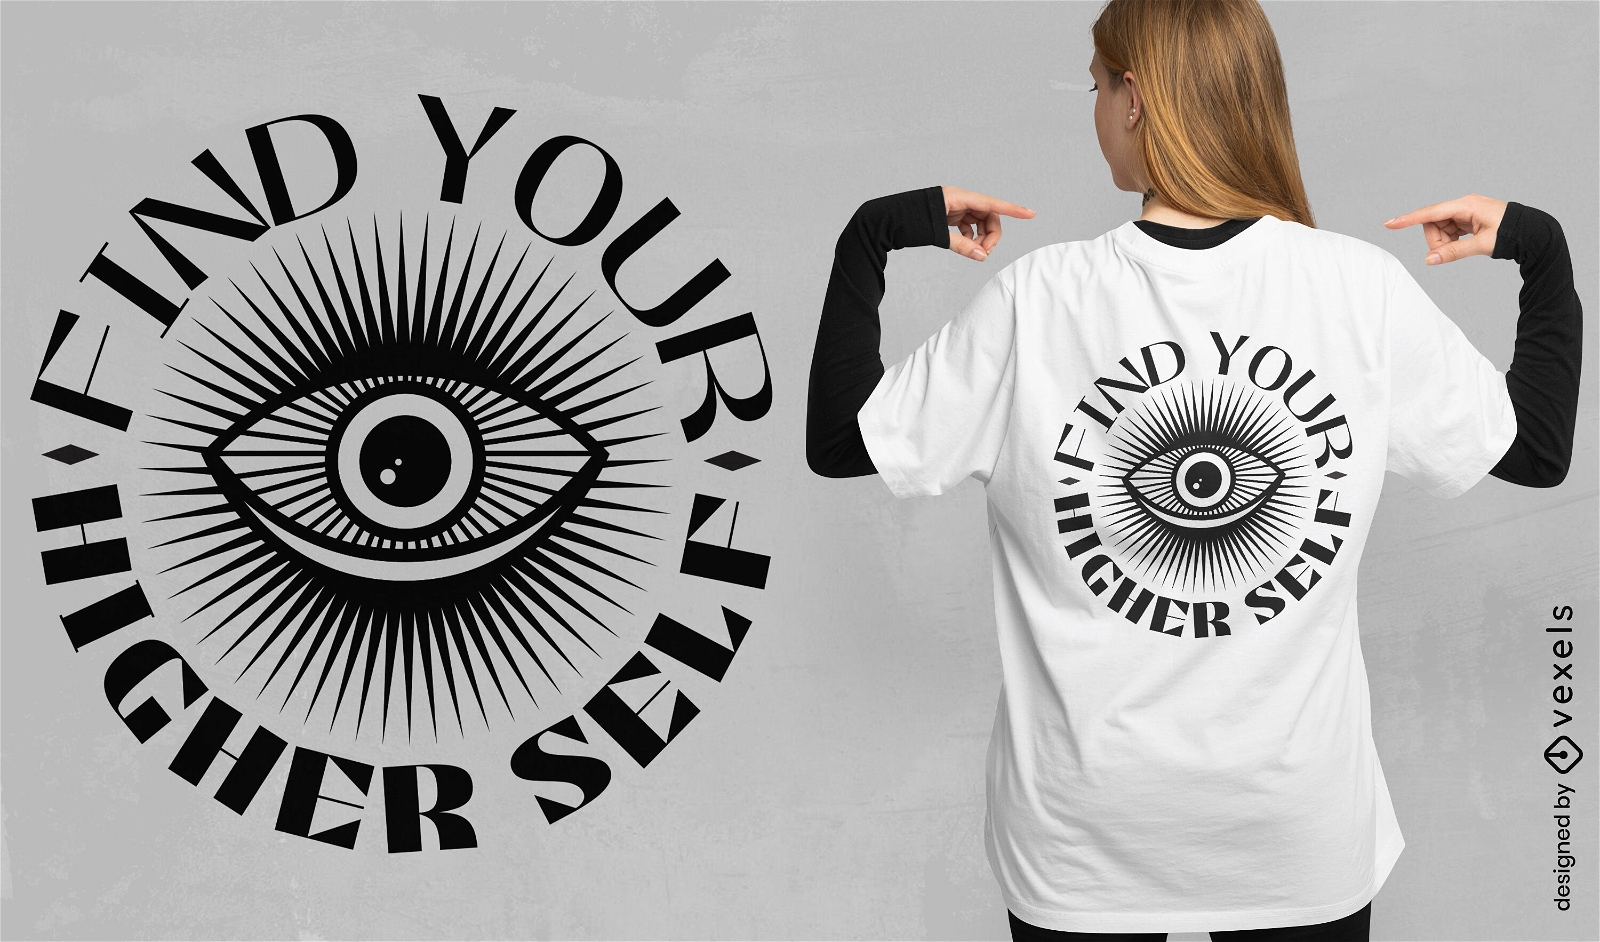 Finden Sie Ihr höheres Selbst-T-Shirt-Design